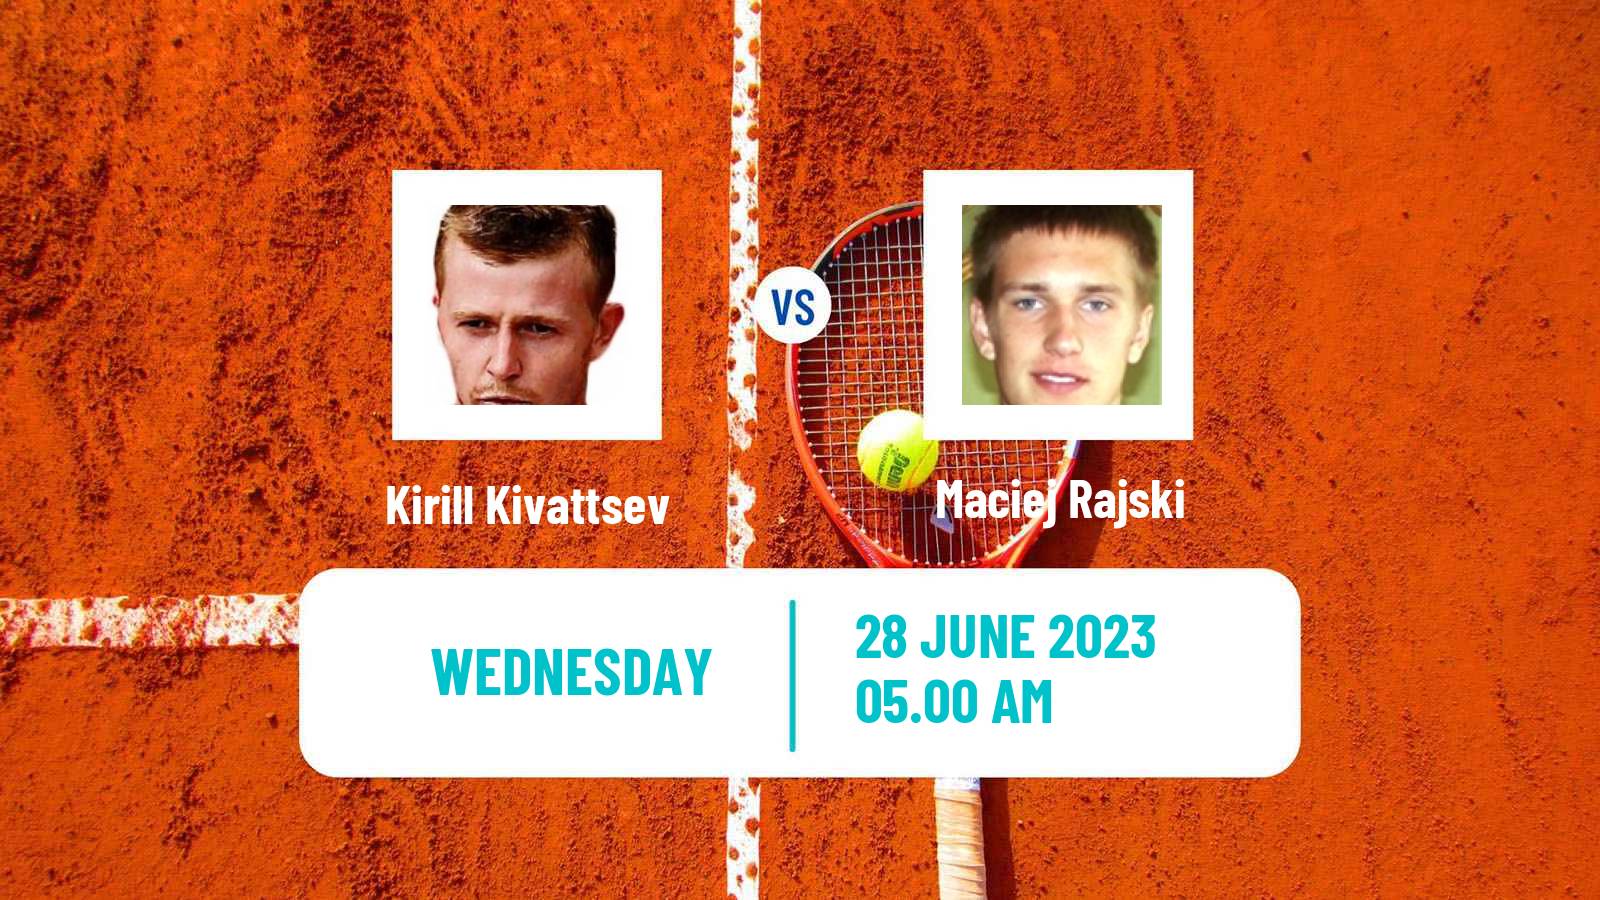 Tennis ITF M15 Wroclaw Men Kirill Kivattsev - Maciej Rajski